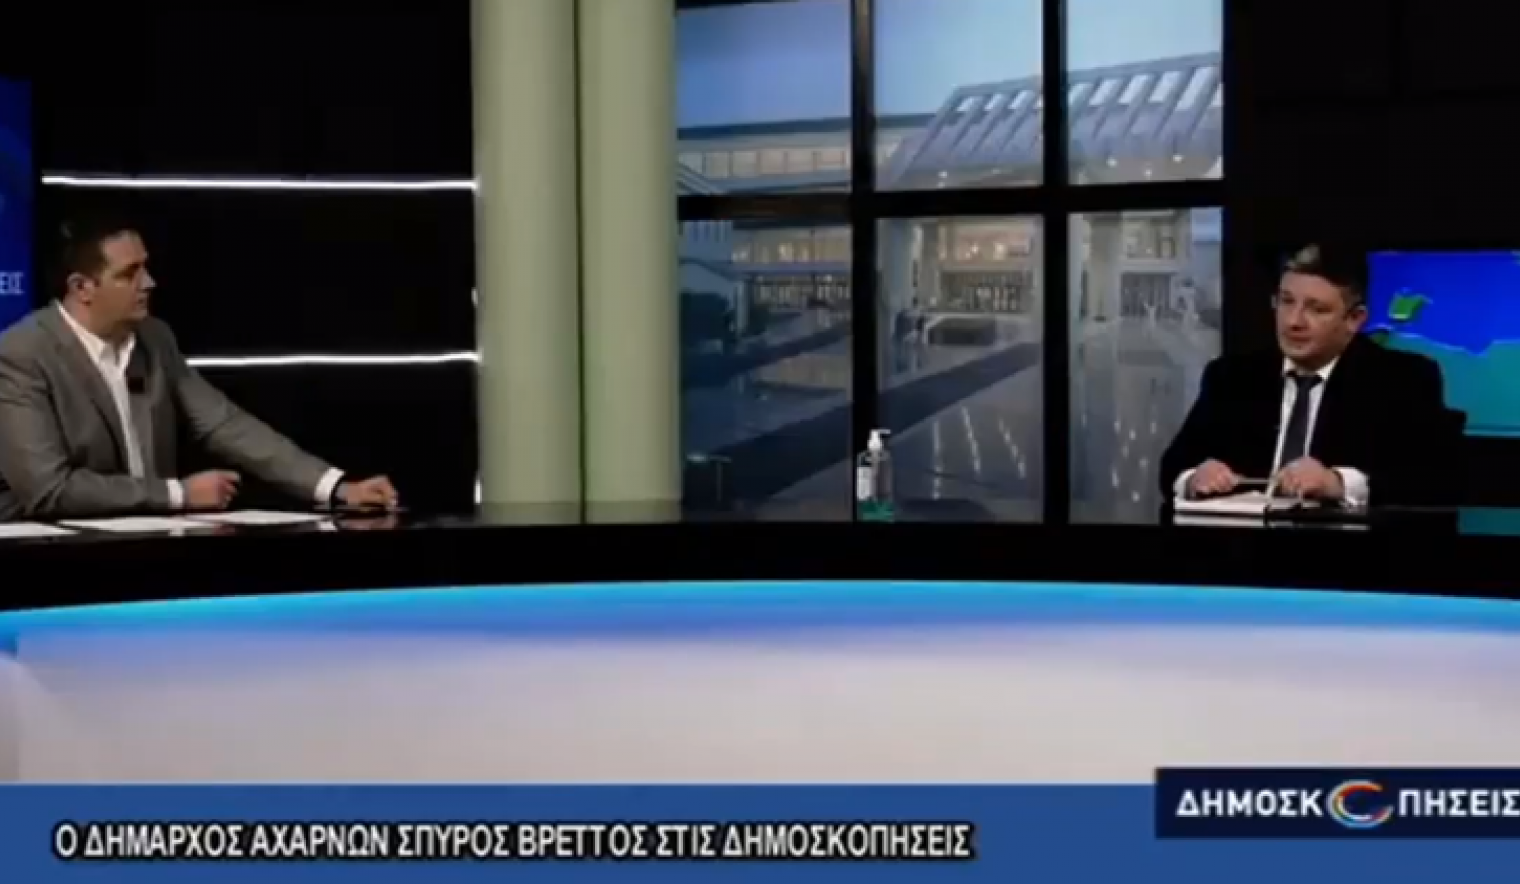 Συνέντευξη του δημάρχου Αχαρνών, Σπ. Βρεττού, στον τηλεοπτικό σταθμό Attica TV και στην εκπομπή «Δημοσκοπήσεις»